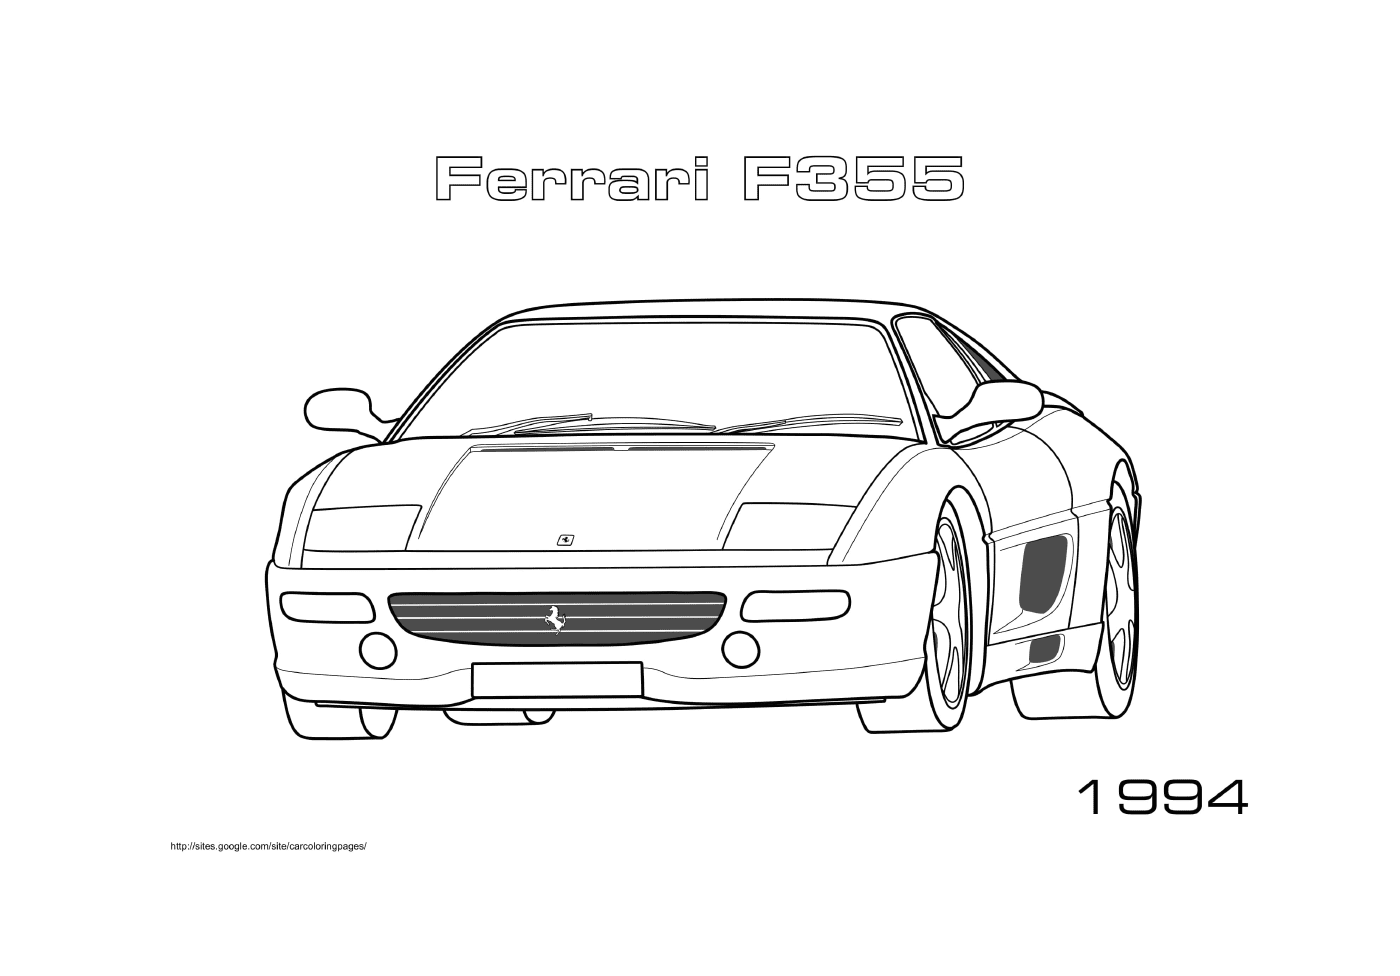  Um Ferrari F355 1994 carro 